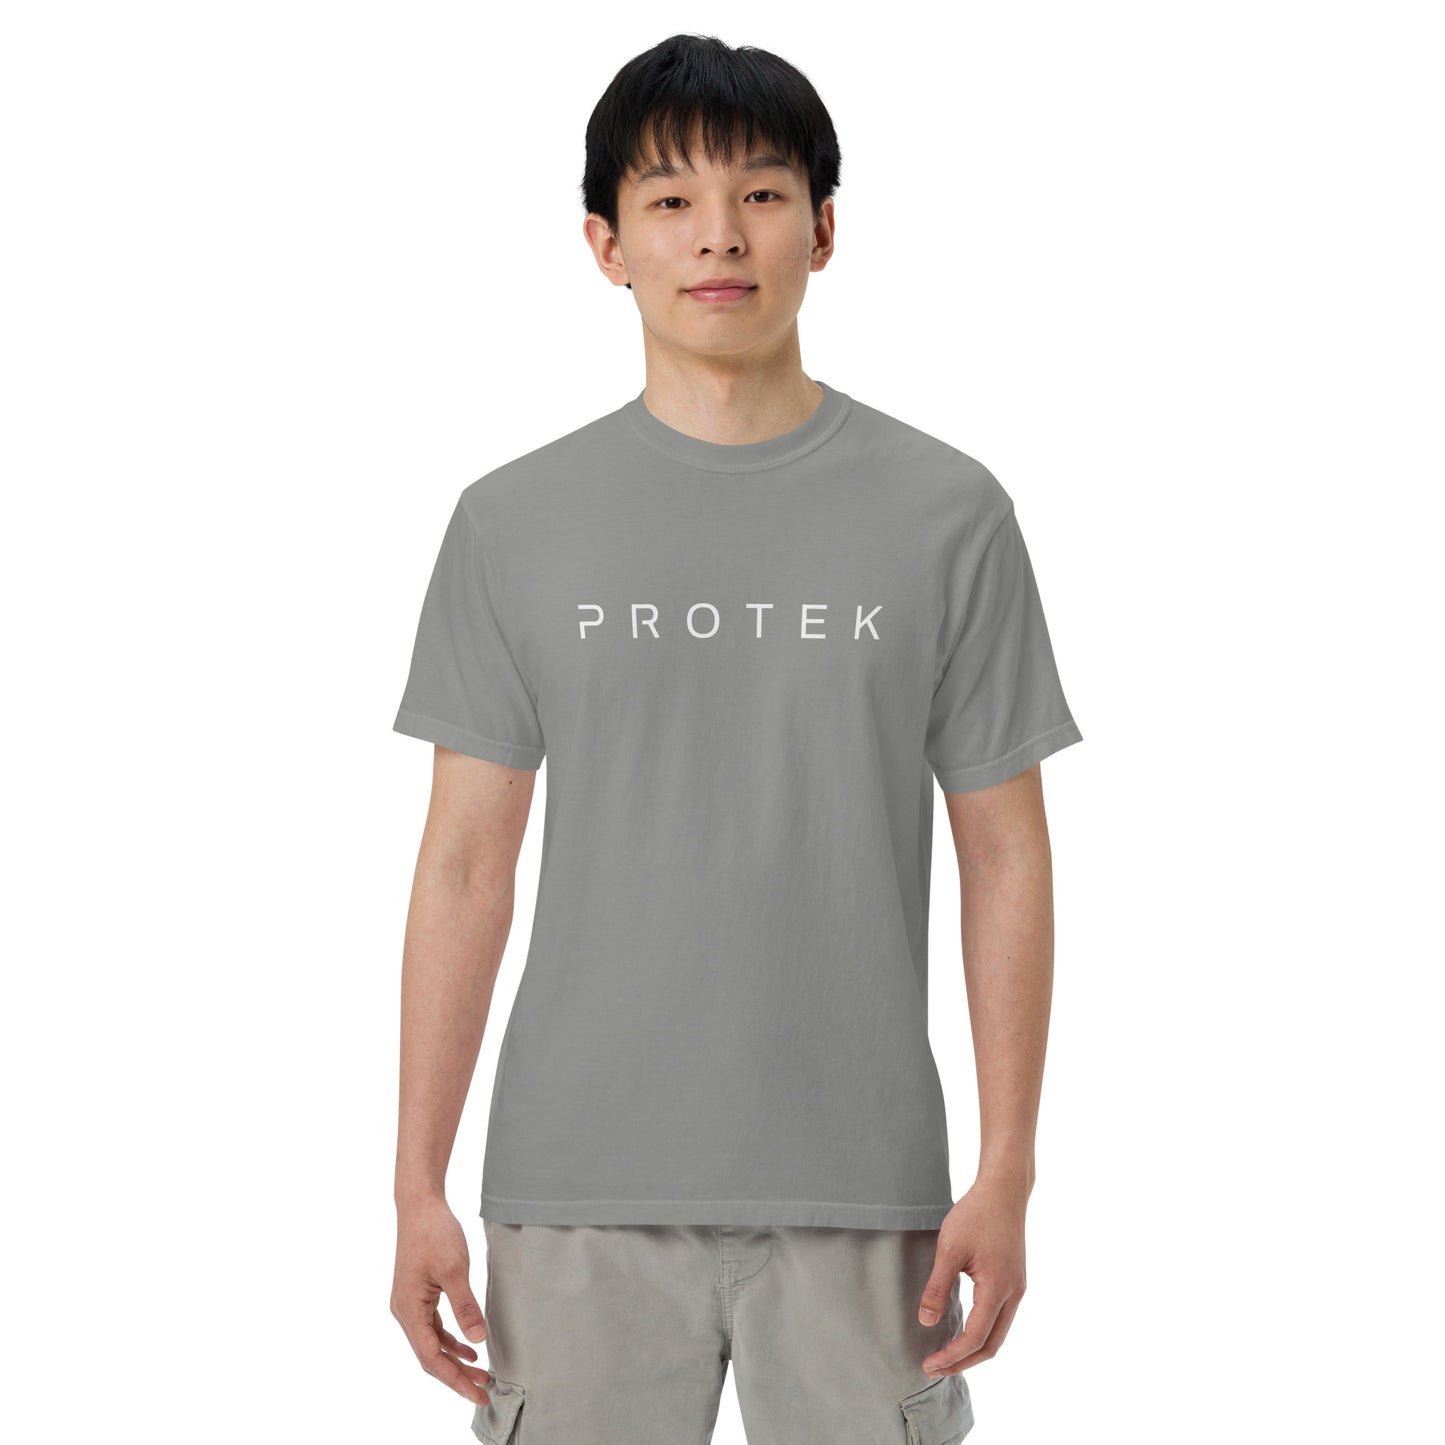 Protek Men’s garment-dyed heavyweight t-shirt